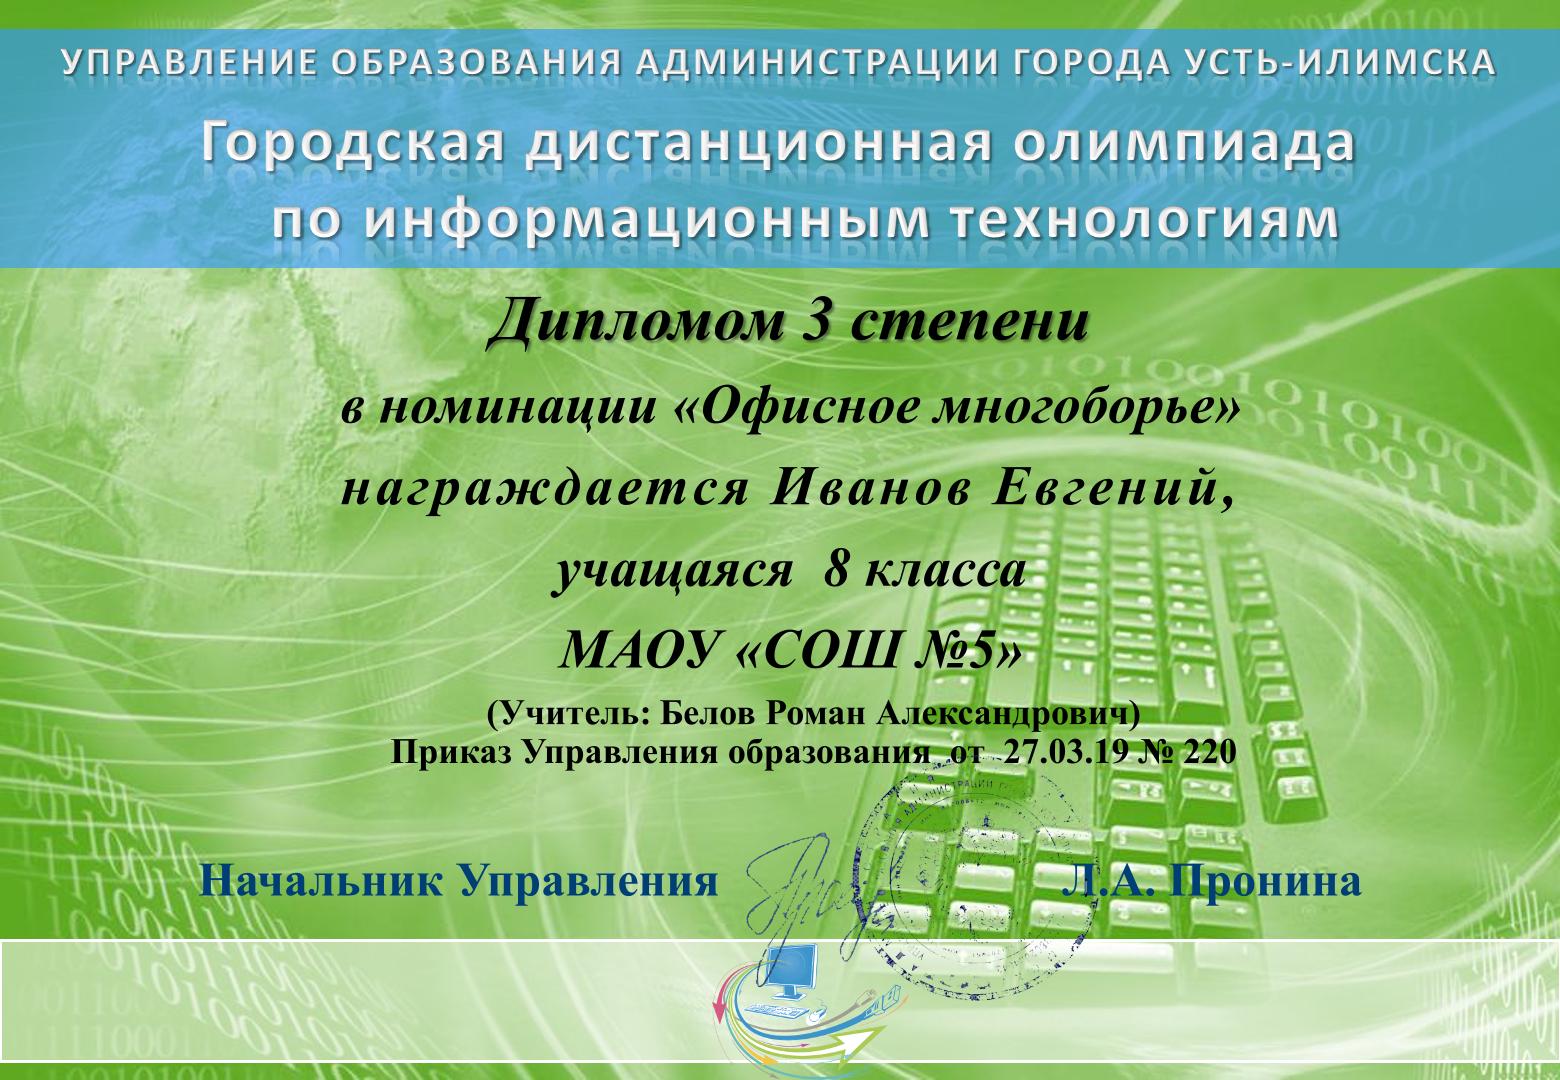 Городская олимпиада по информационным технологиям, г. Усть-Илимск - ДИПЛОМ III СТЕПЕНИ